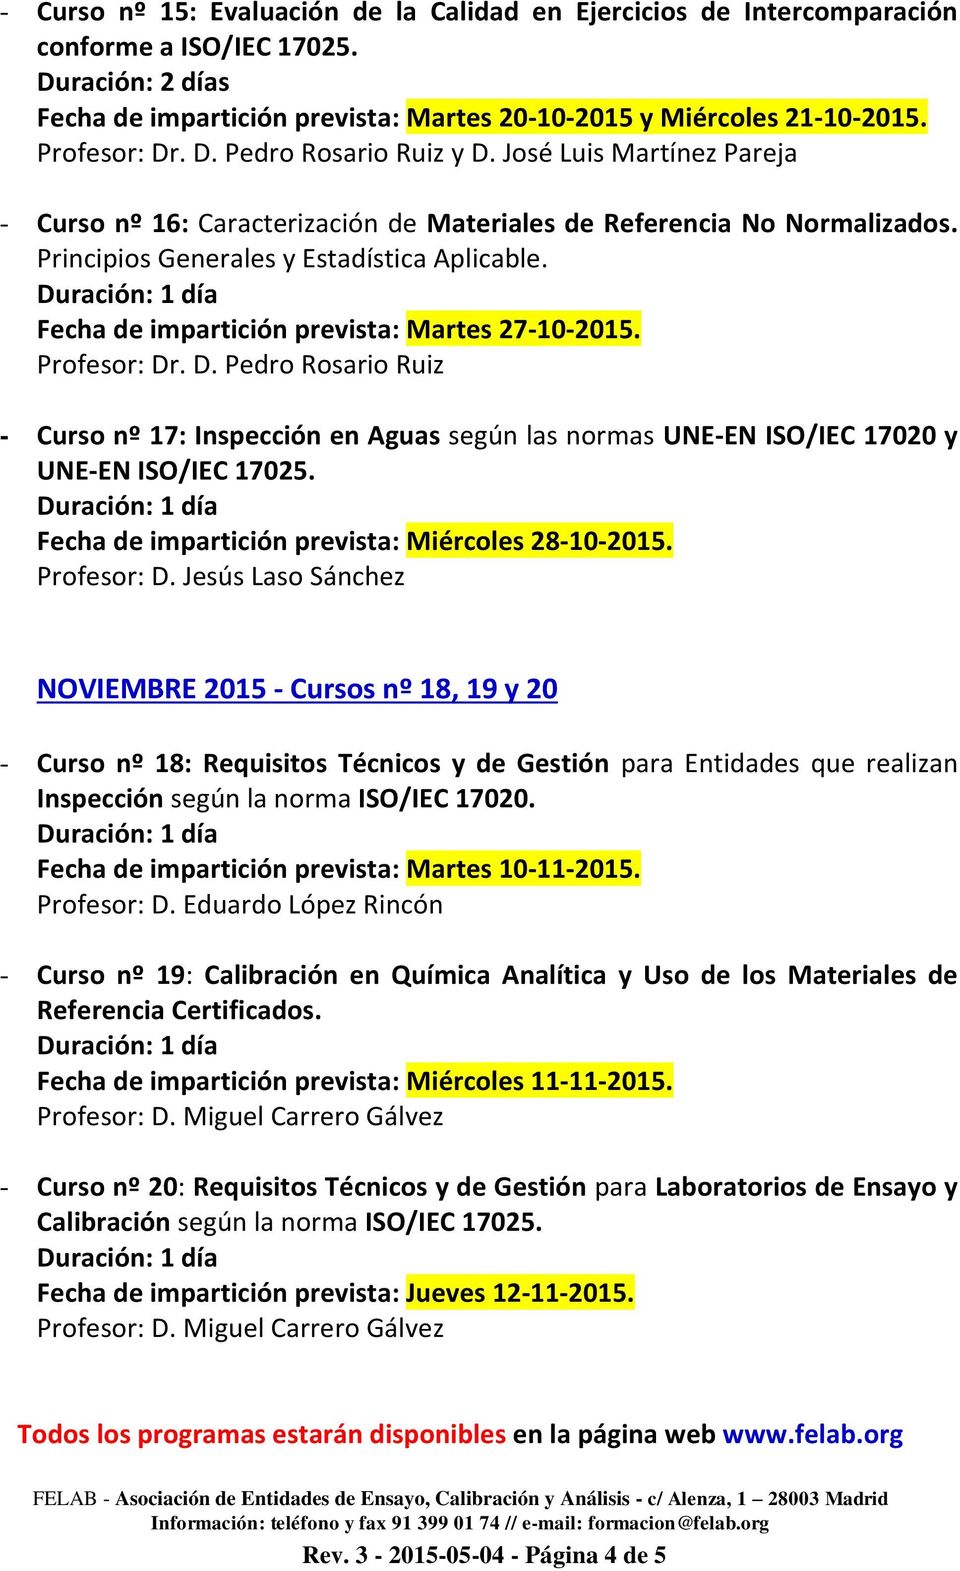 Fecha de impartición prevista: Martes 27-10-2015. Profesor: Dr. D. Pedro Rosario Ruiz - Curso nº 17: Inspección en Aguas según las normas UNE-EN ISO/IEC 17020 y UNE-EN ISO/IEC 17025.